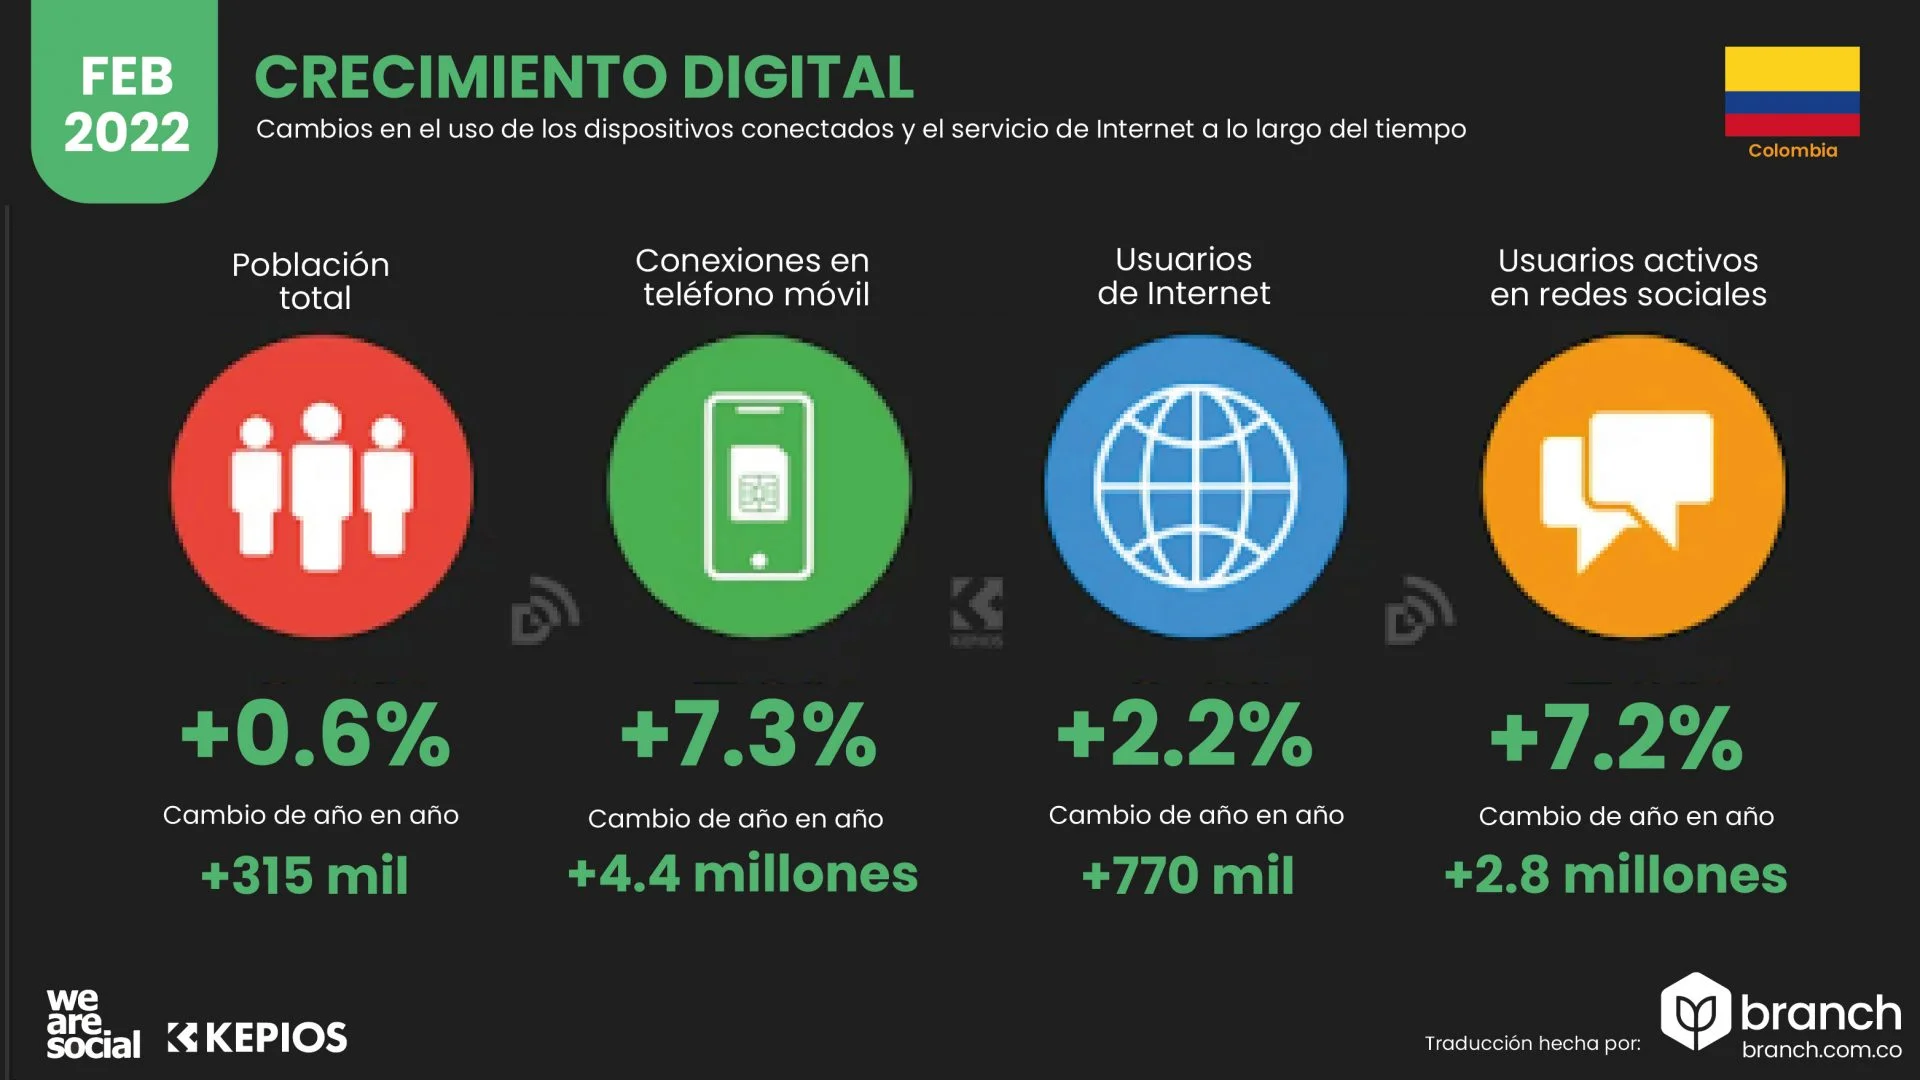 crecimiento digital colombia 2022 - Branch agencia marketing